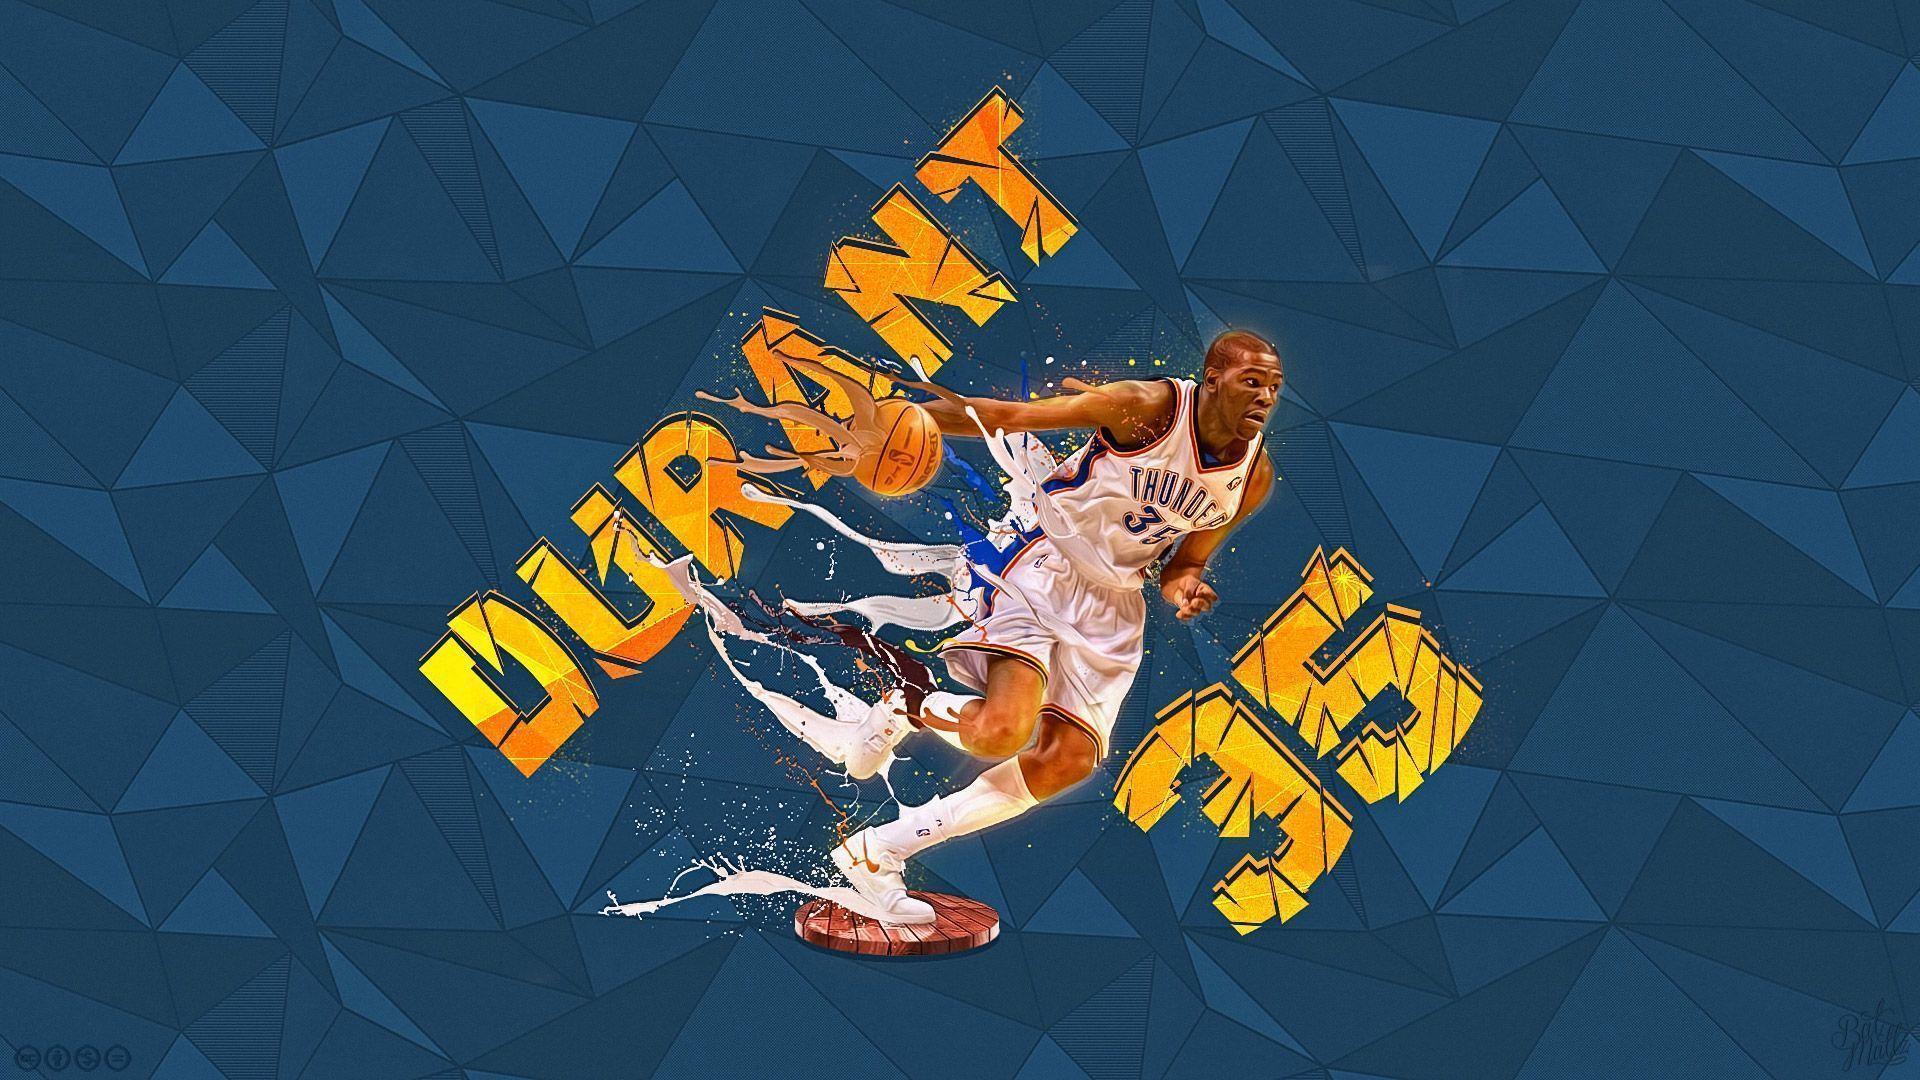 Kevin Durant 2014 1920×1080 Wallpaper. Basketball Wallpaper at